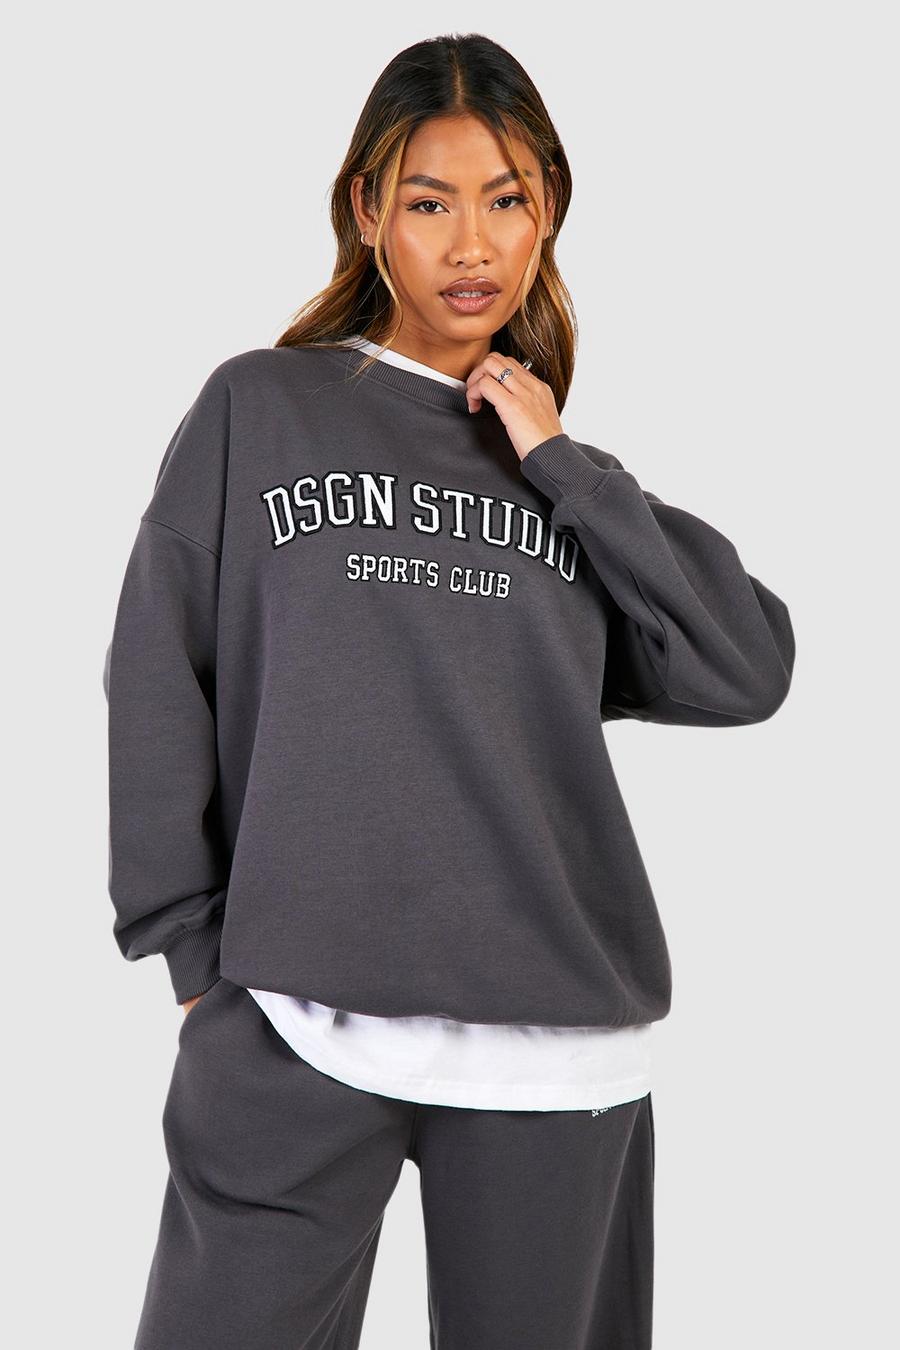 Charcoal Dsgn Studio Applique Oversized Sweatshirt 